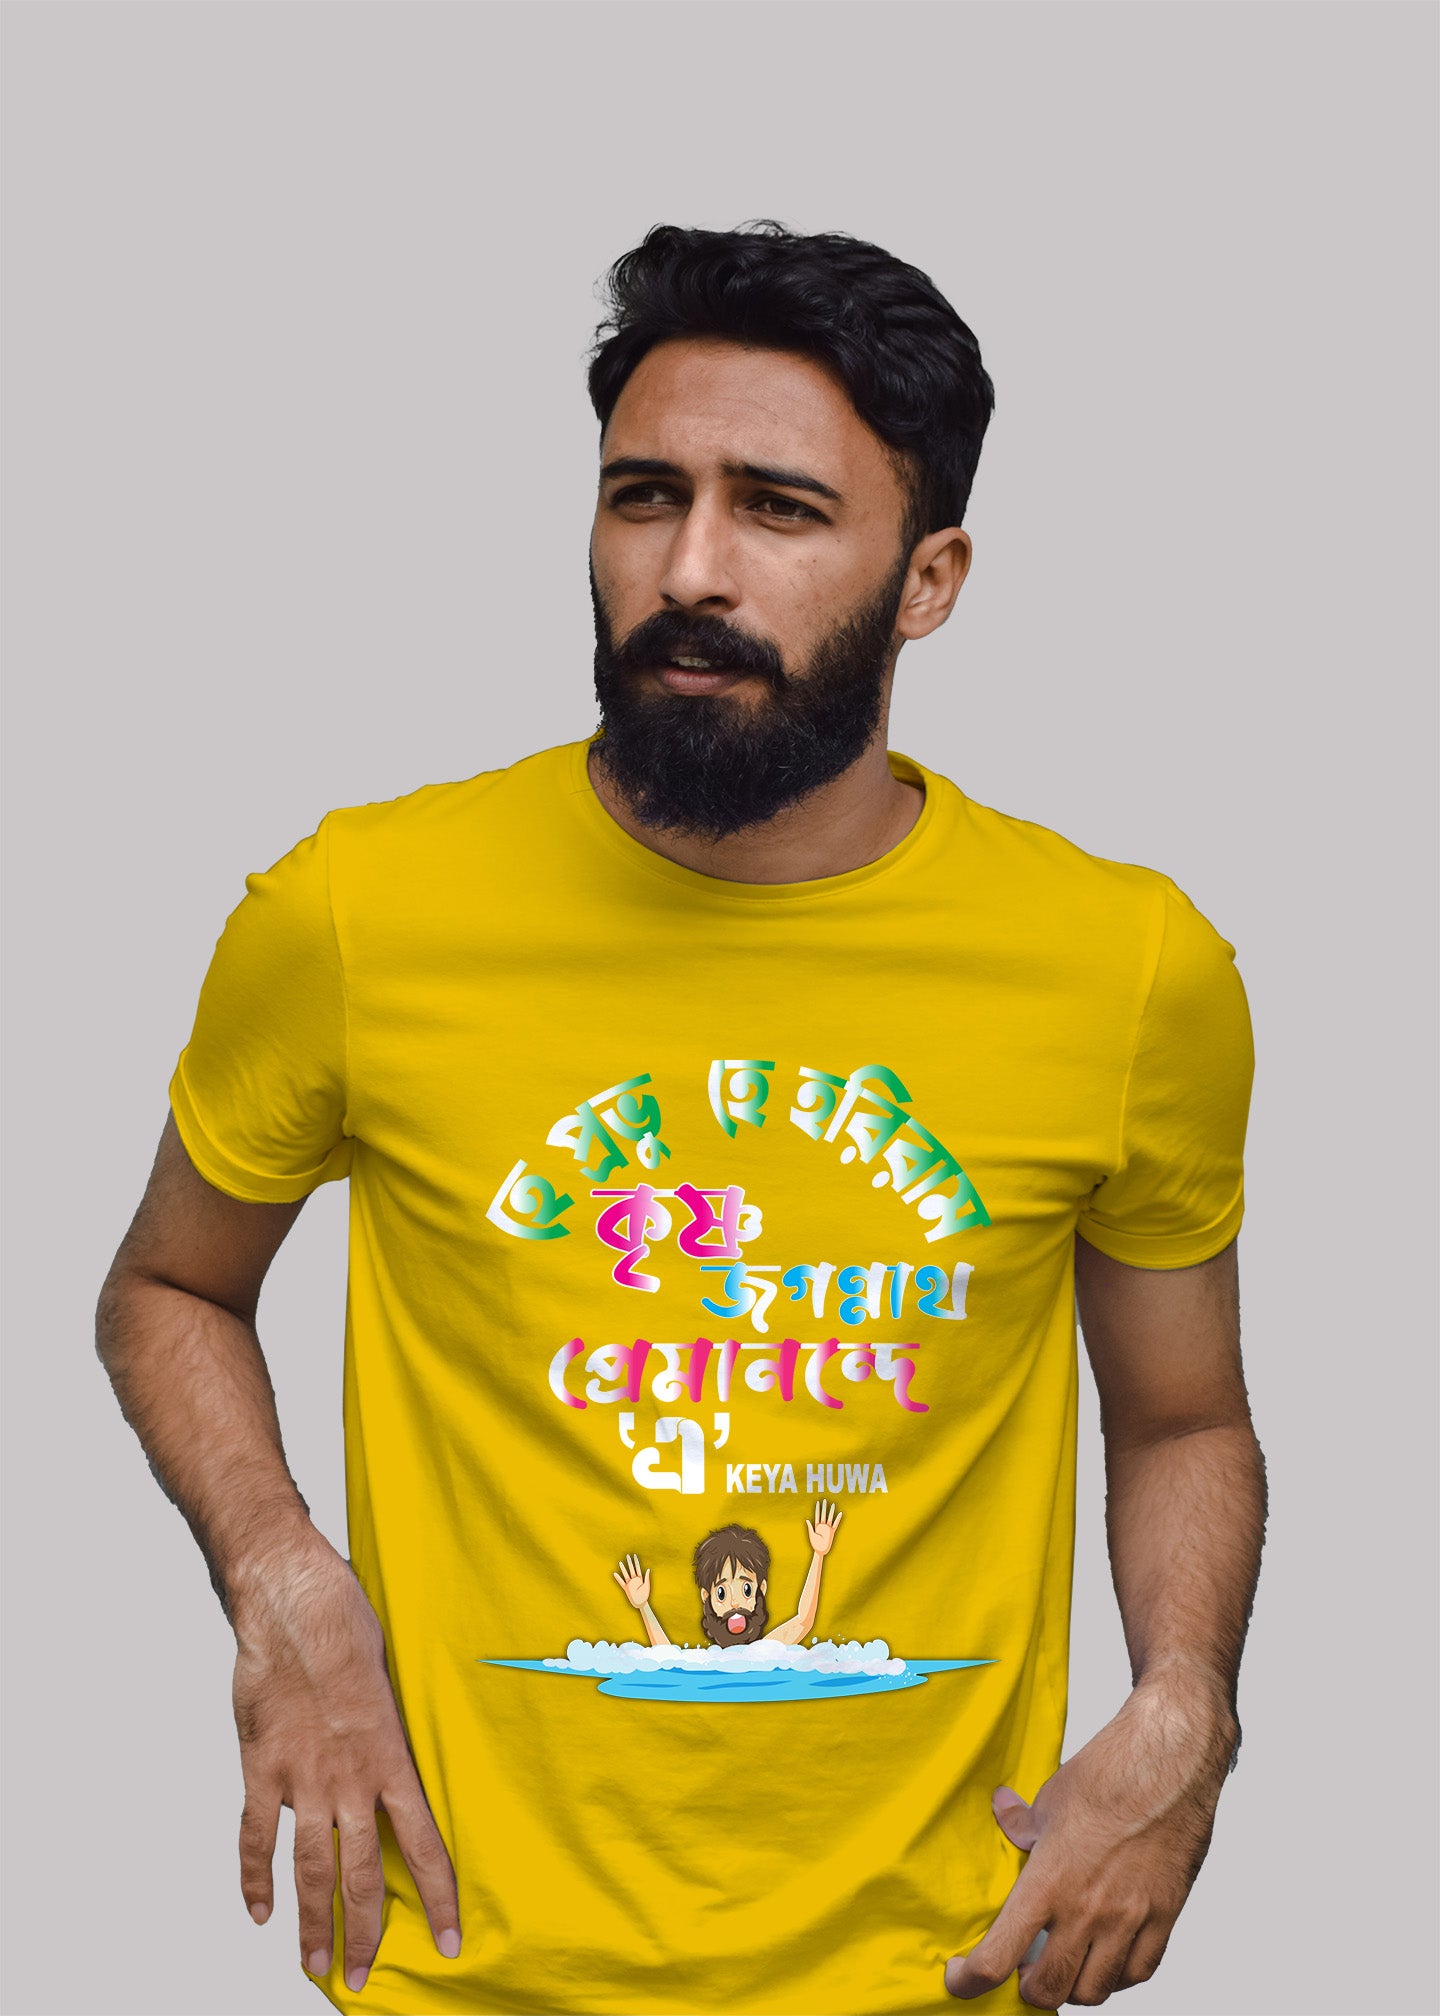 Hey Prabhu bengali Printed Half Sleeve Premium Cotton T-shirt